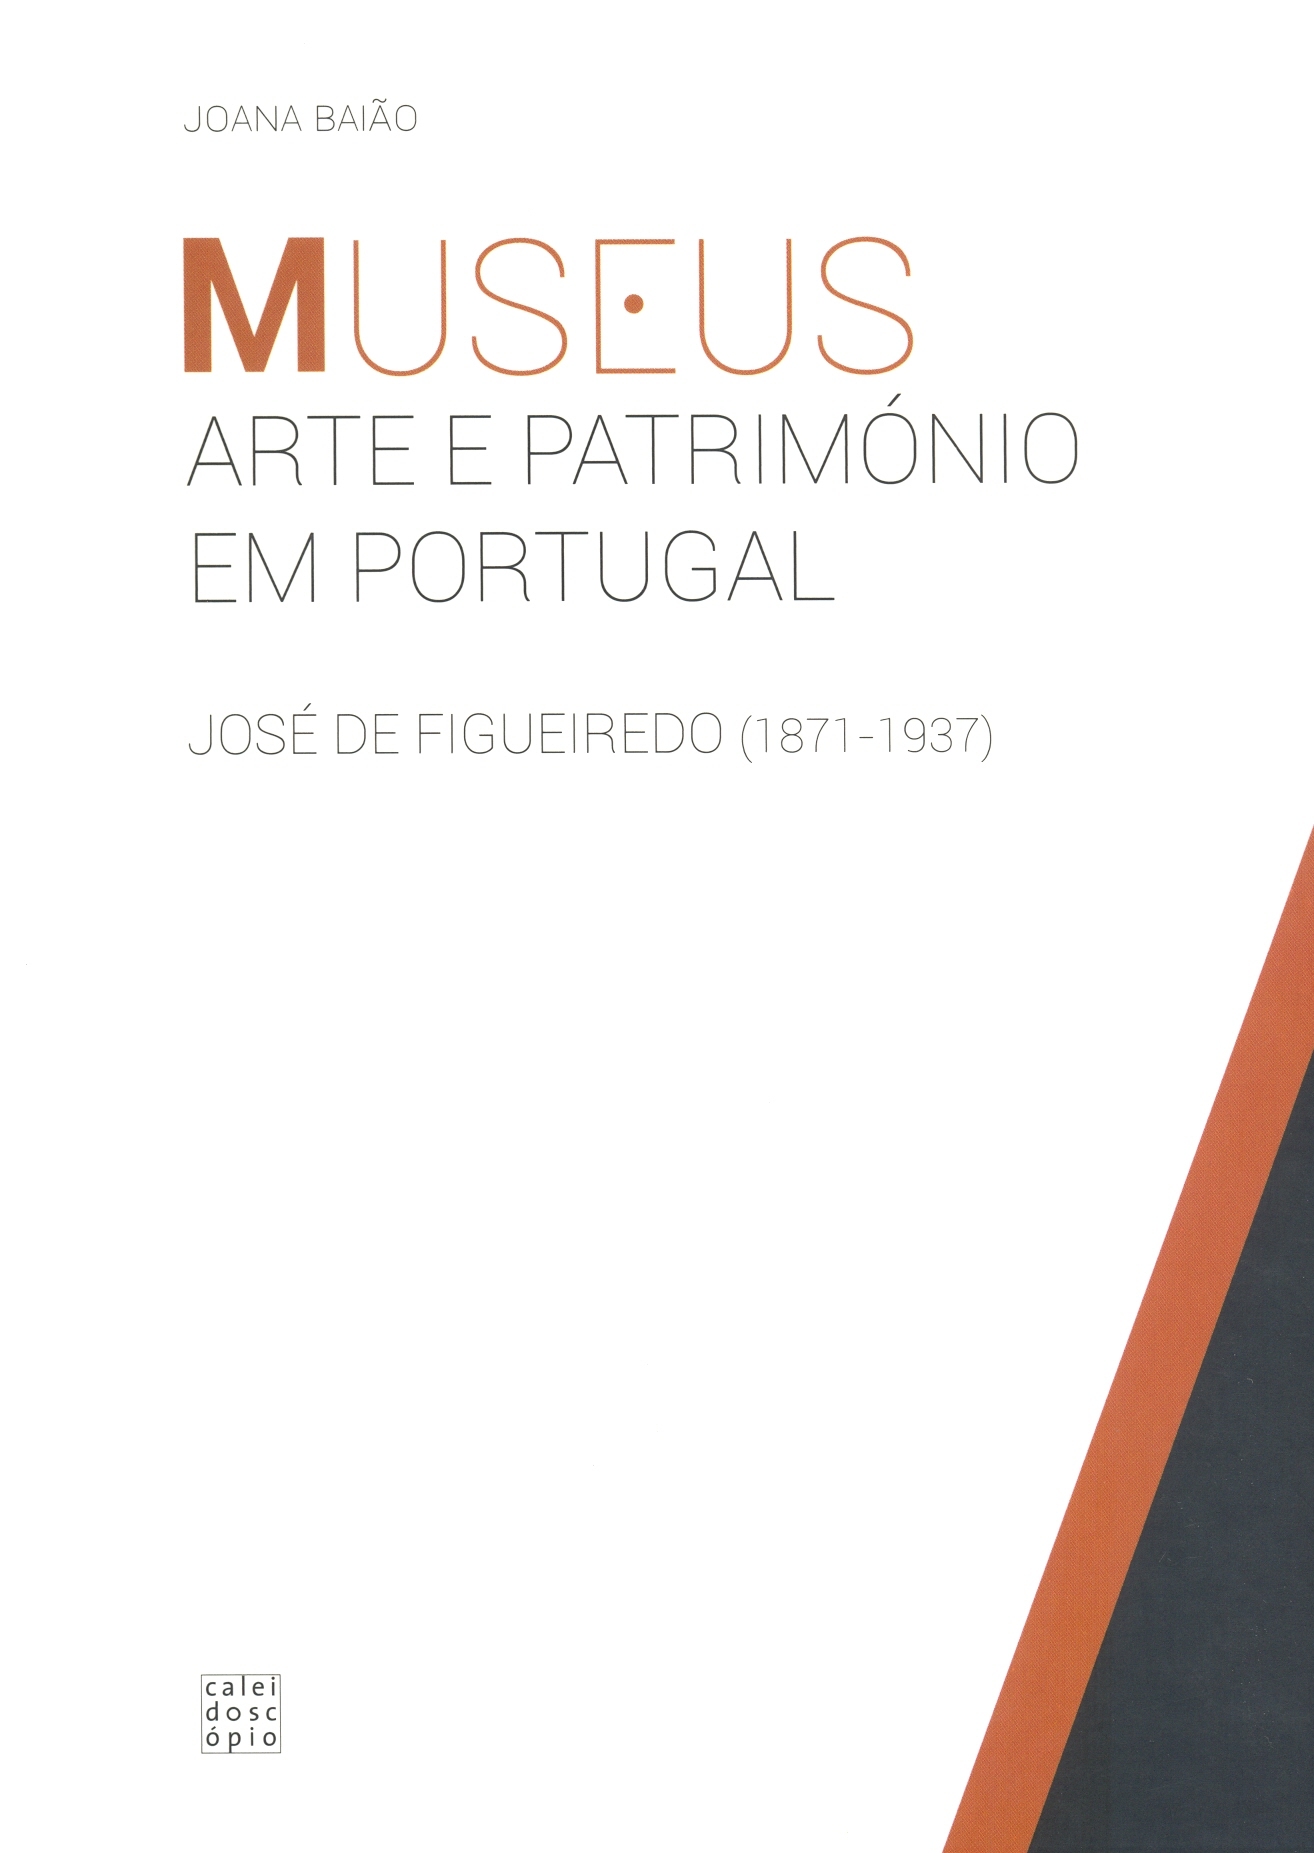 Joana Baião – Museus, Arte e Património em Portugal. José de Figueiredo (1871-1937) 